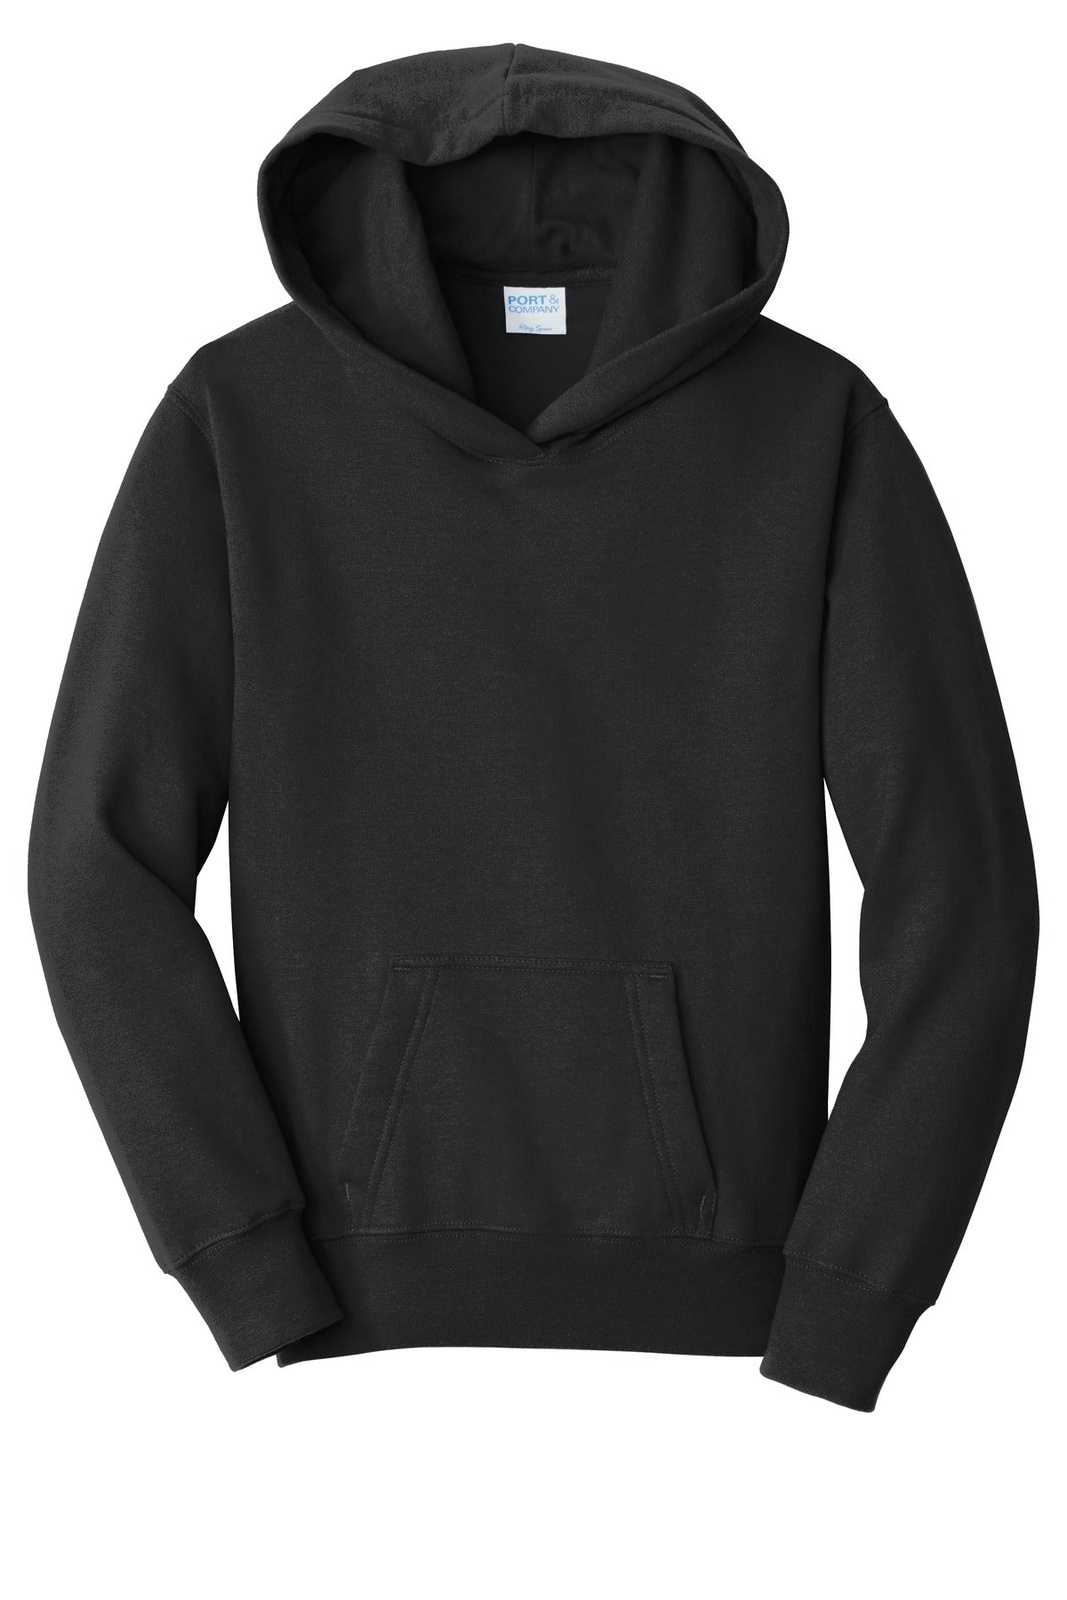 Port &amp; Company PC850YH Youth Fan Favorite Fleece Pullover Hooded Sweatshirt - Jet Black - HIT a Double - 5